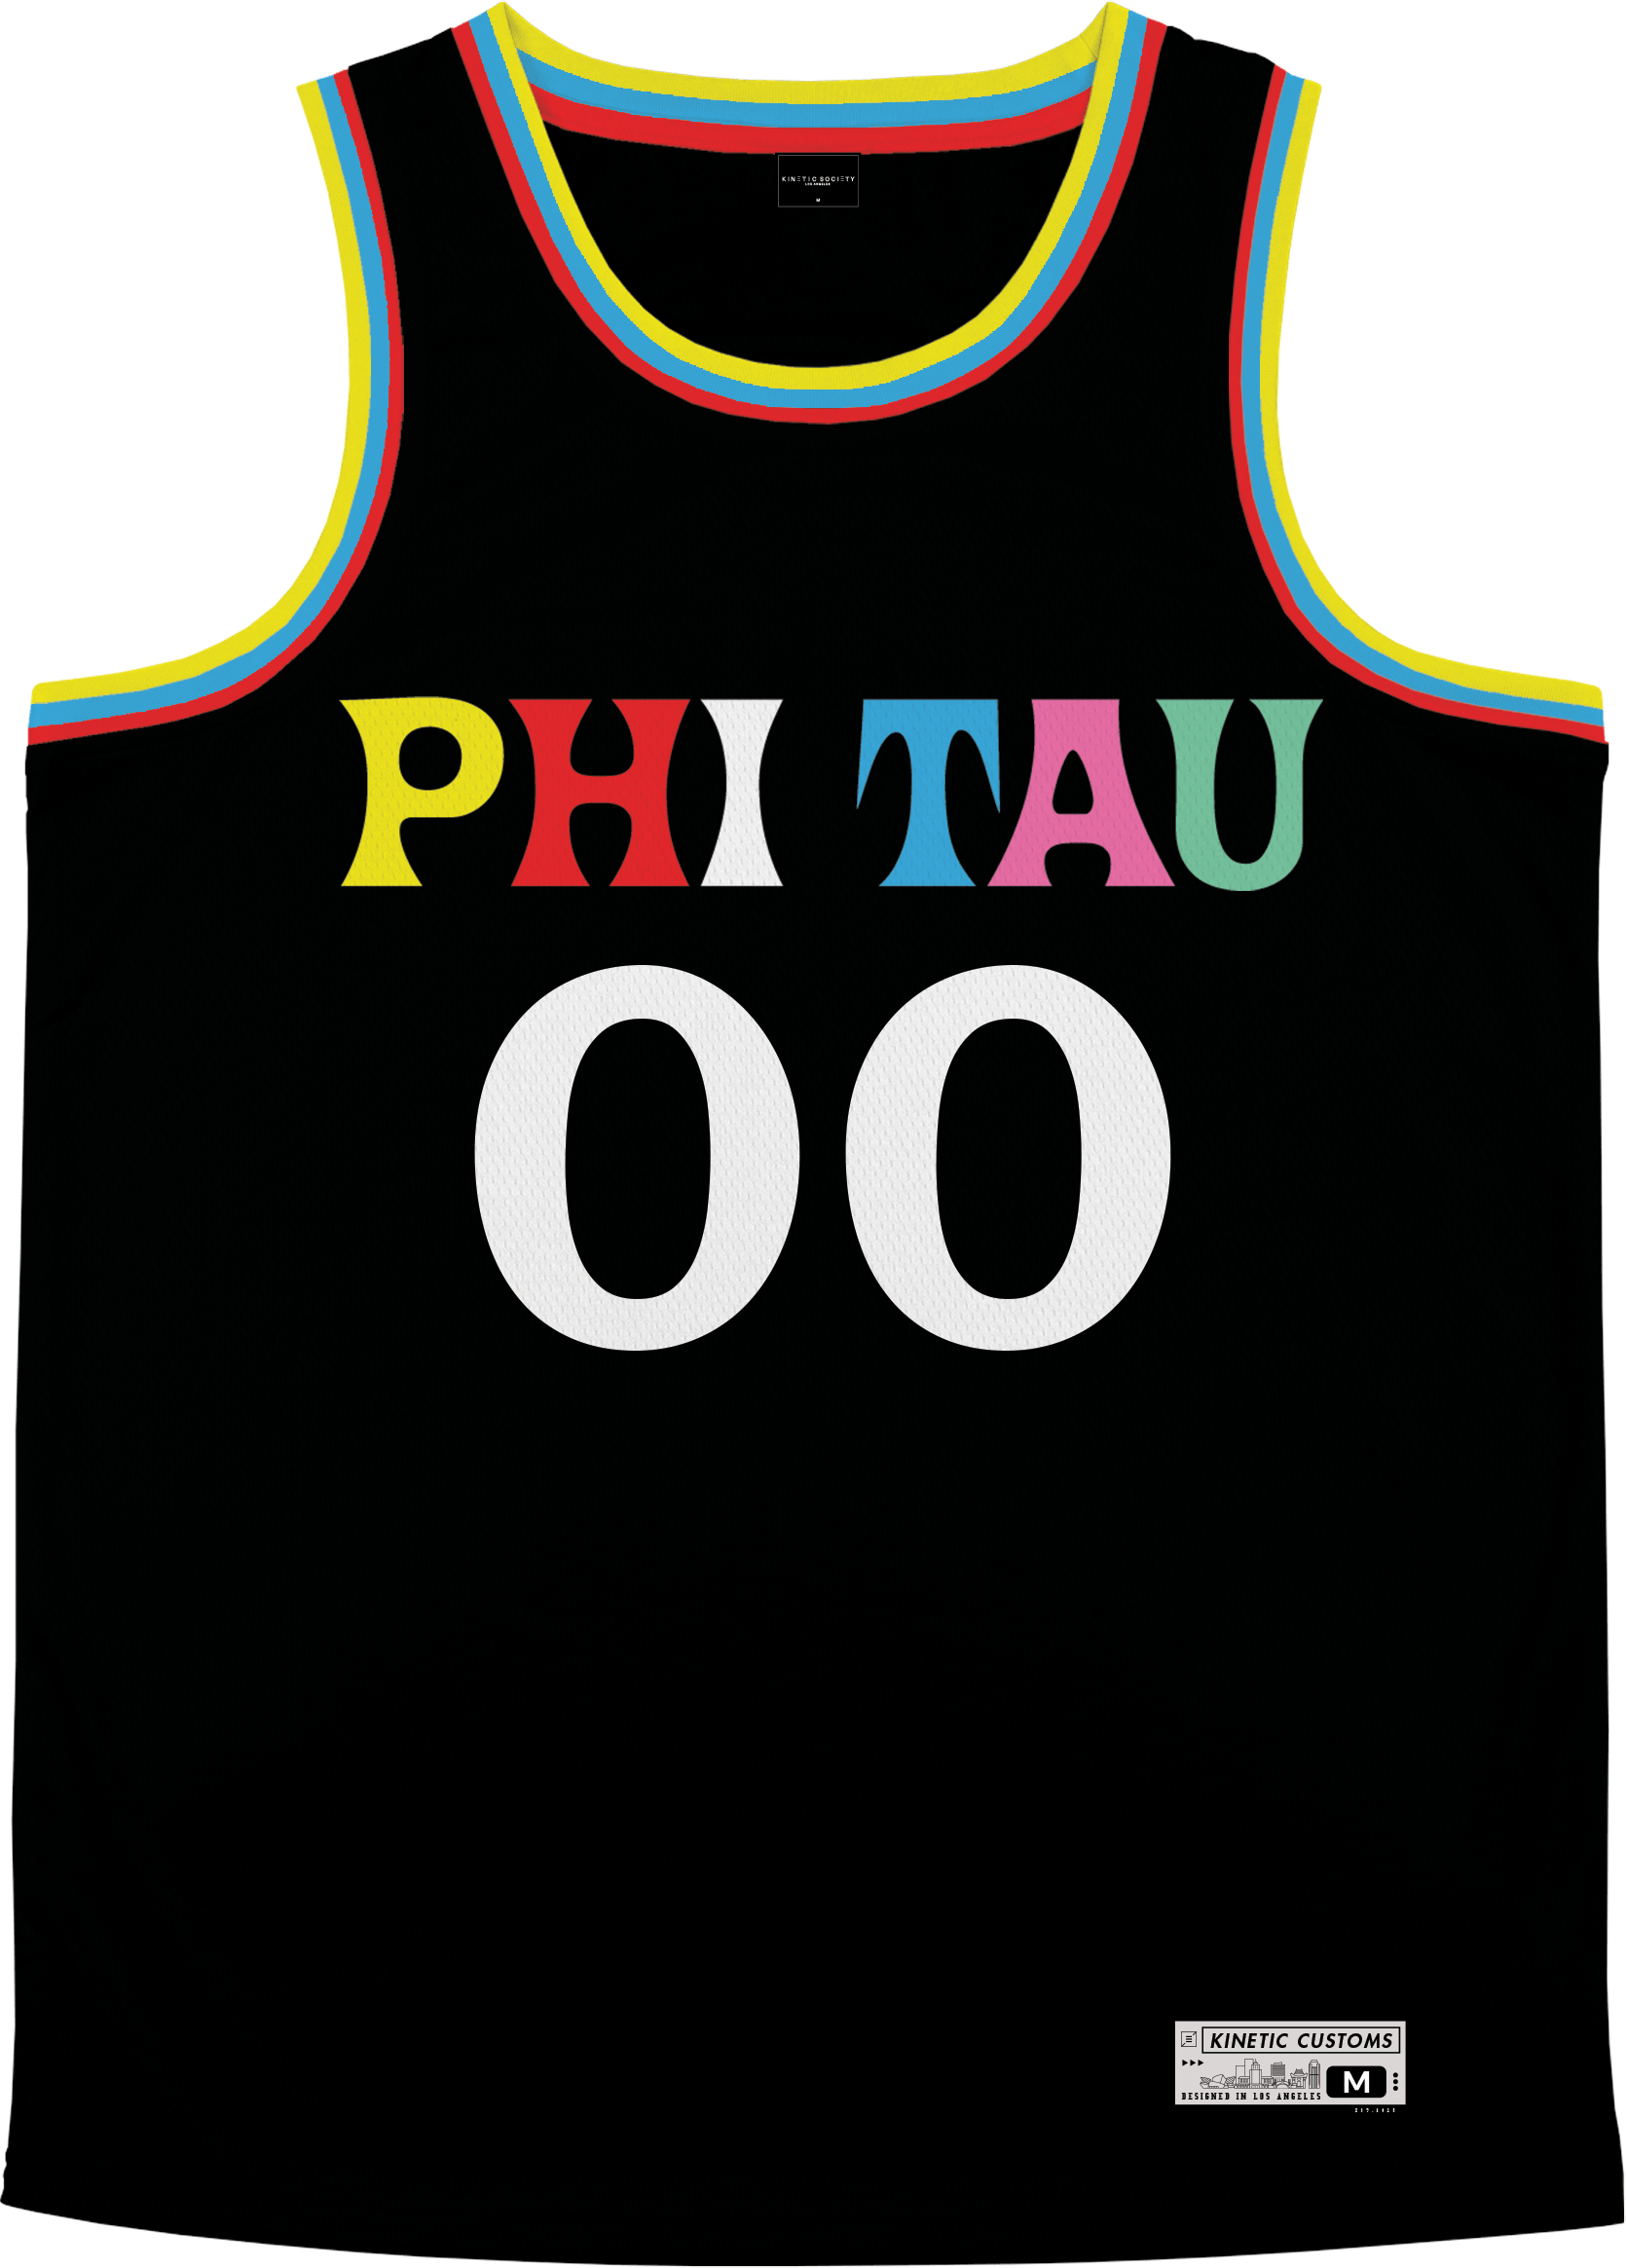 Phi Kappa Tau - Crayon House Basketball Jersey Premium Basketball Kinetic Society LLC 